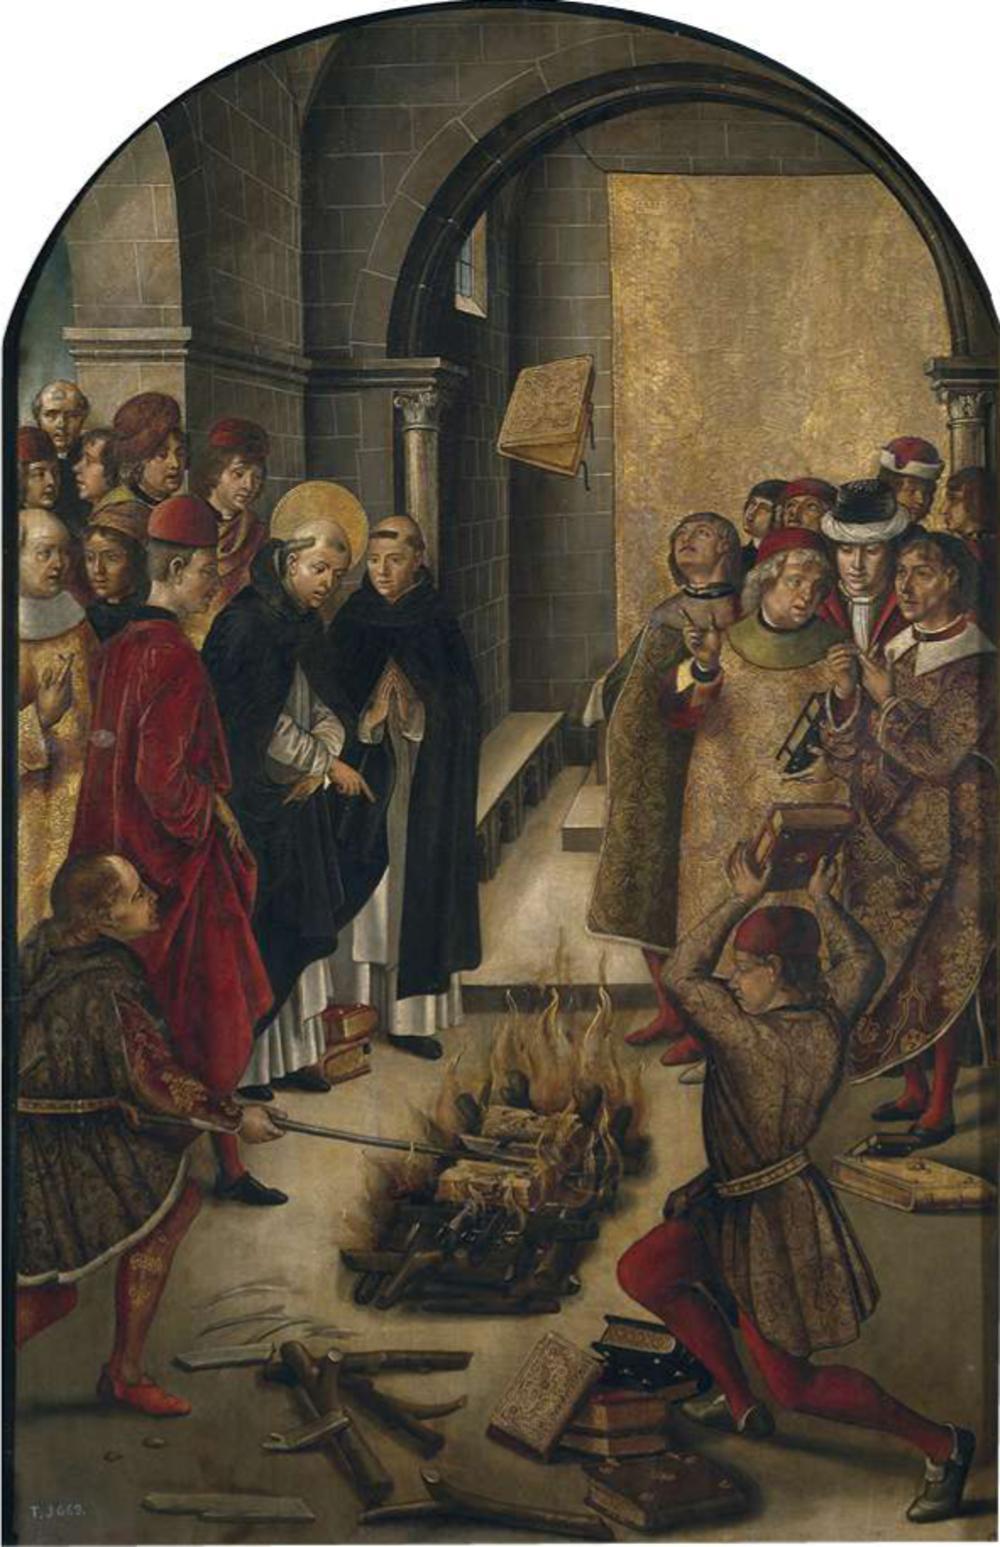 Dominicus de Guzmán discussieert met de katharen. Hun beider boeken worden in het vuur gegooid, maar dat van Dominicus wordt wonderbaarlijk door de vlammen gespaard. Schilderij van Pedro Berruguete eind 15de eeuw. (Prado)